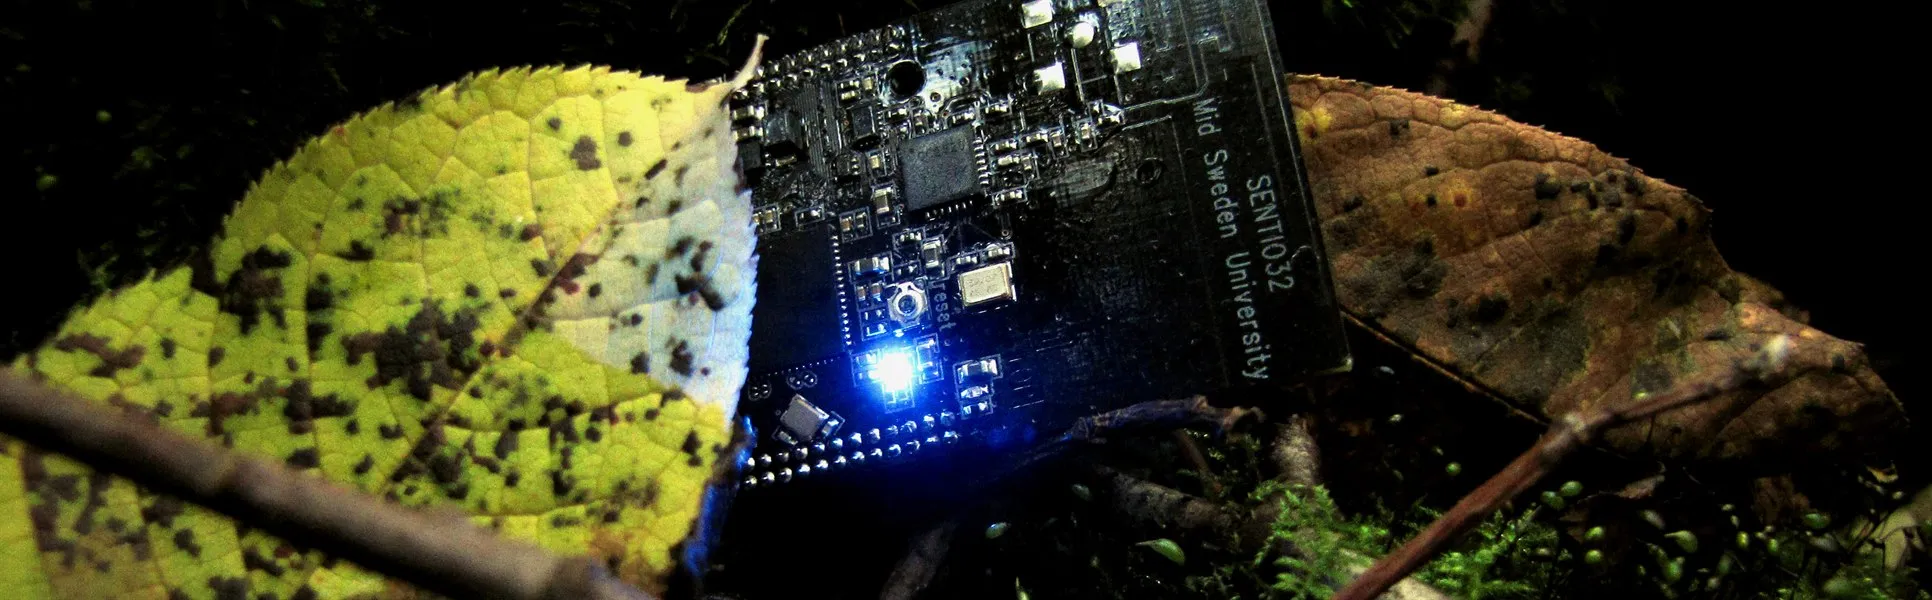 Trådlös sensor i skogen